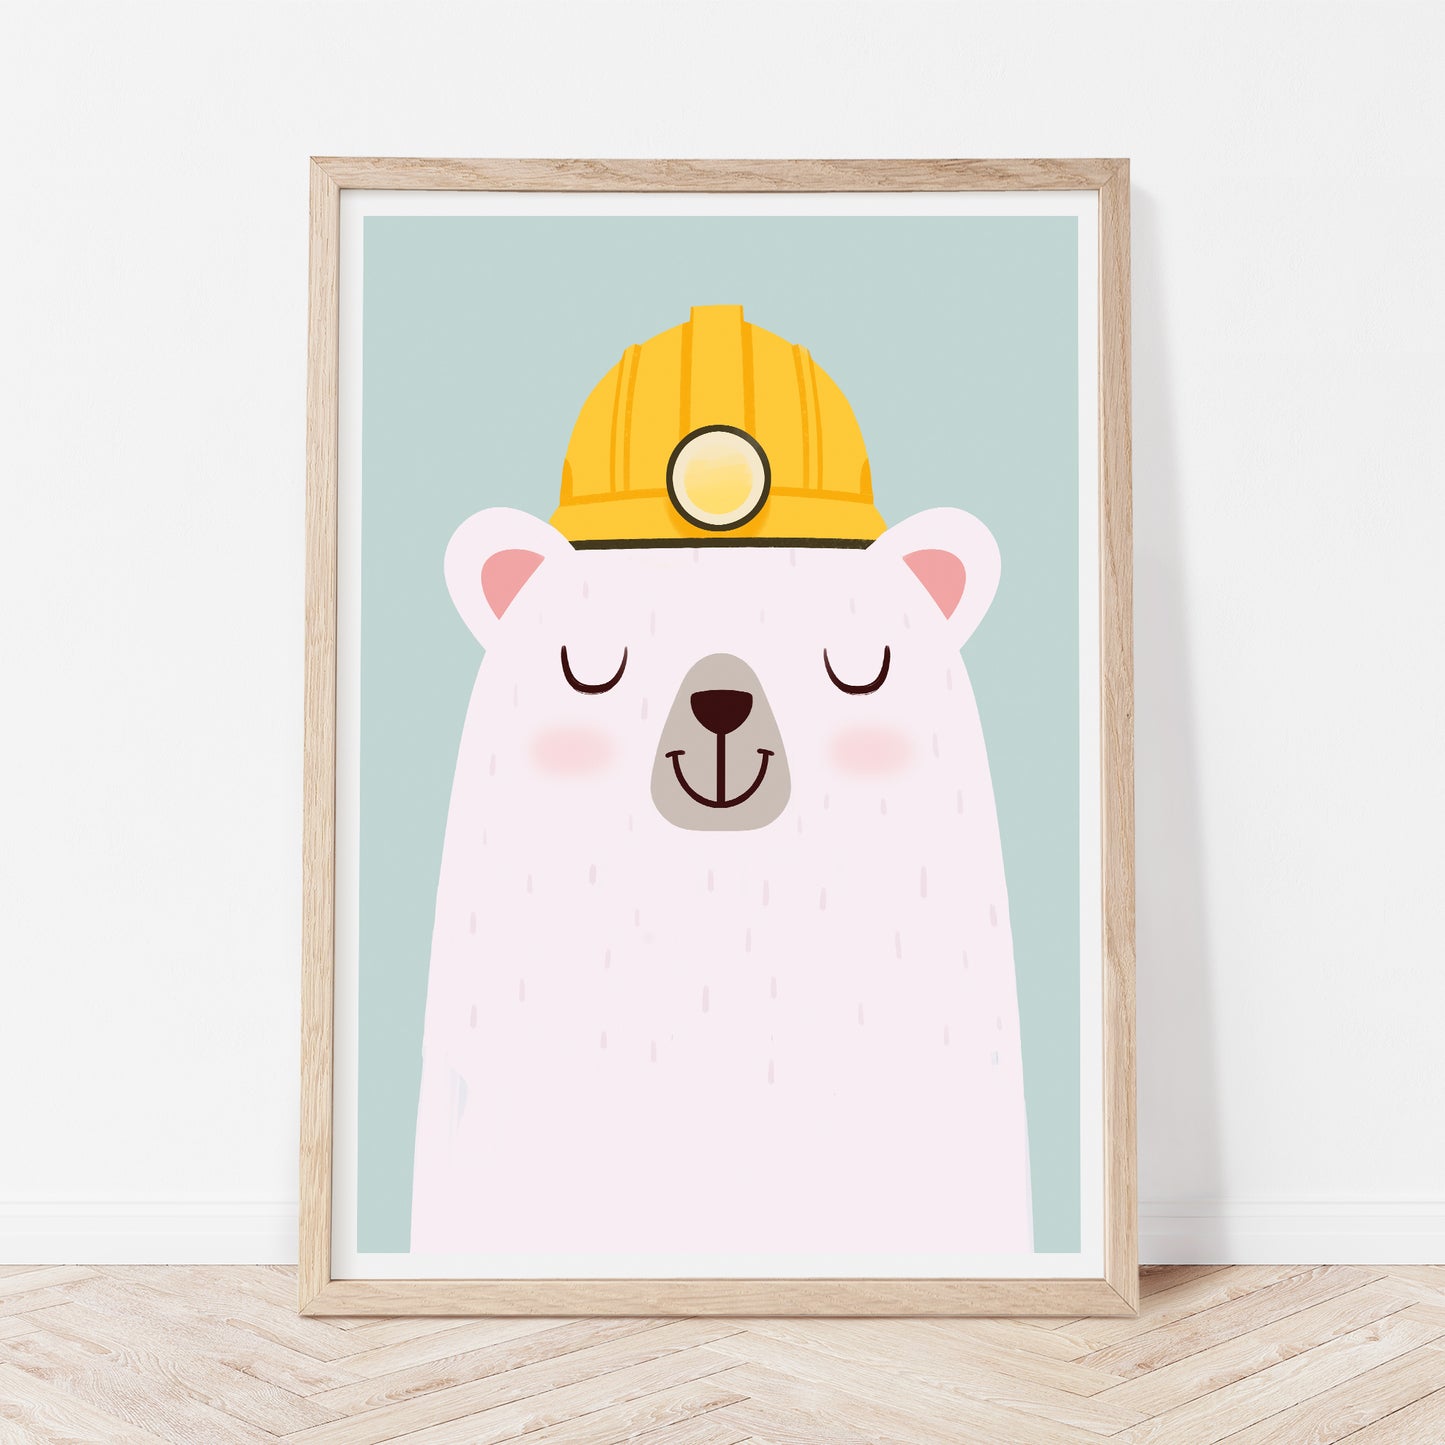 Construction worker bear print